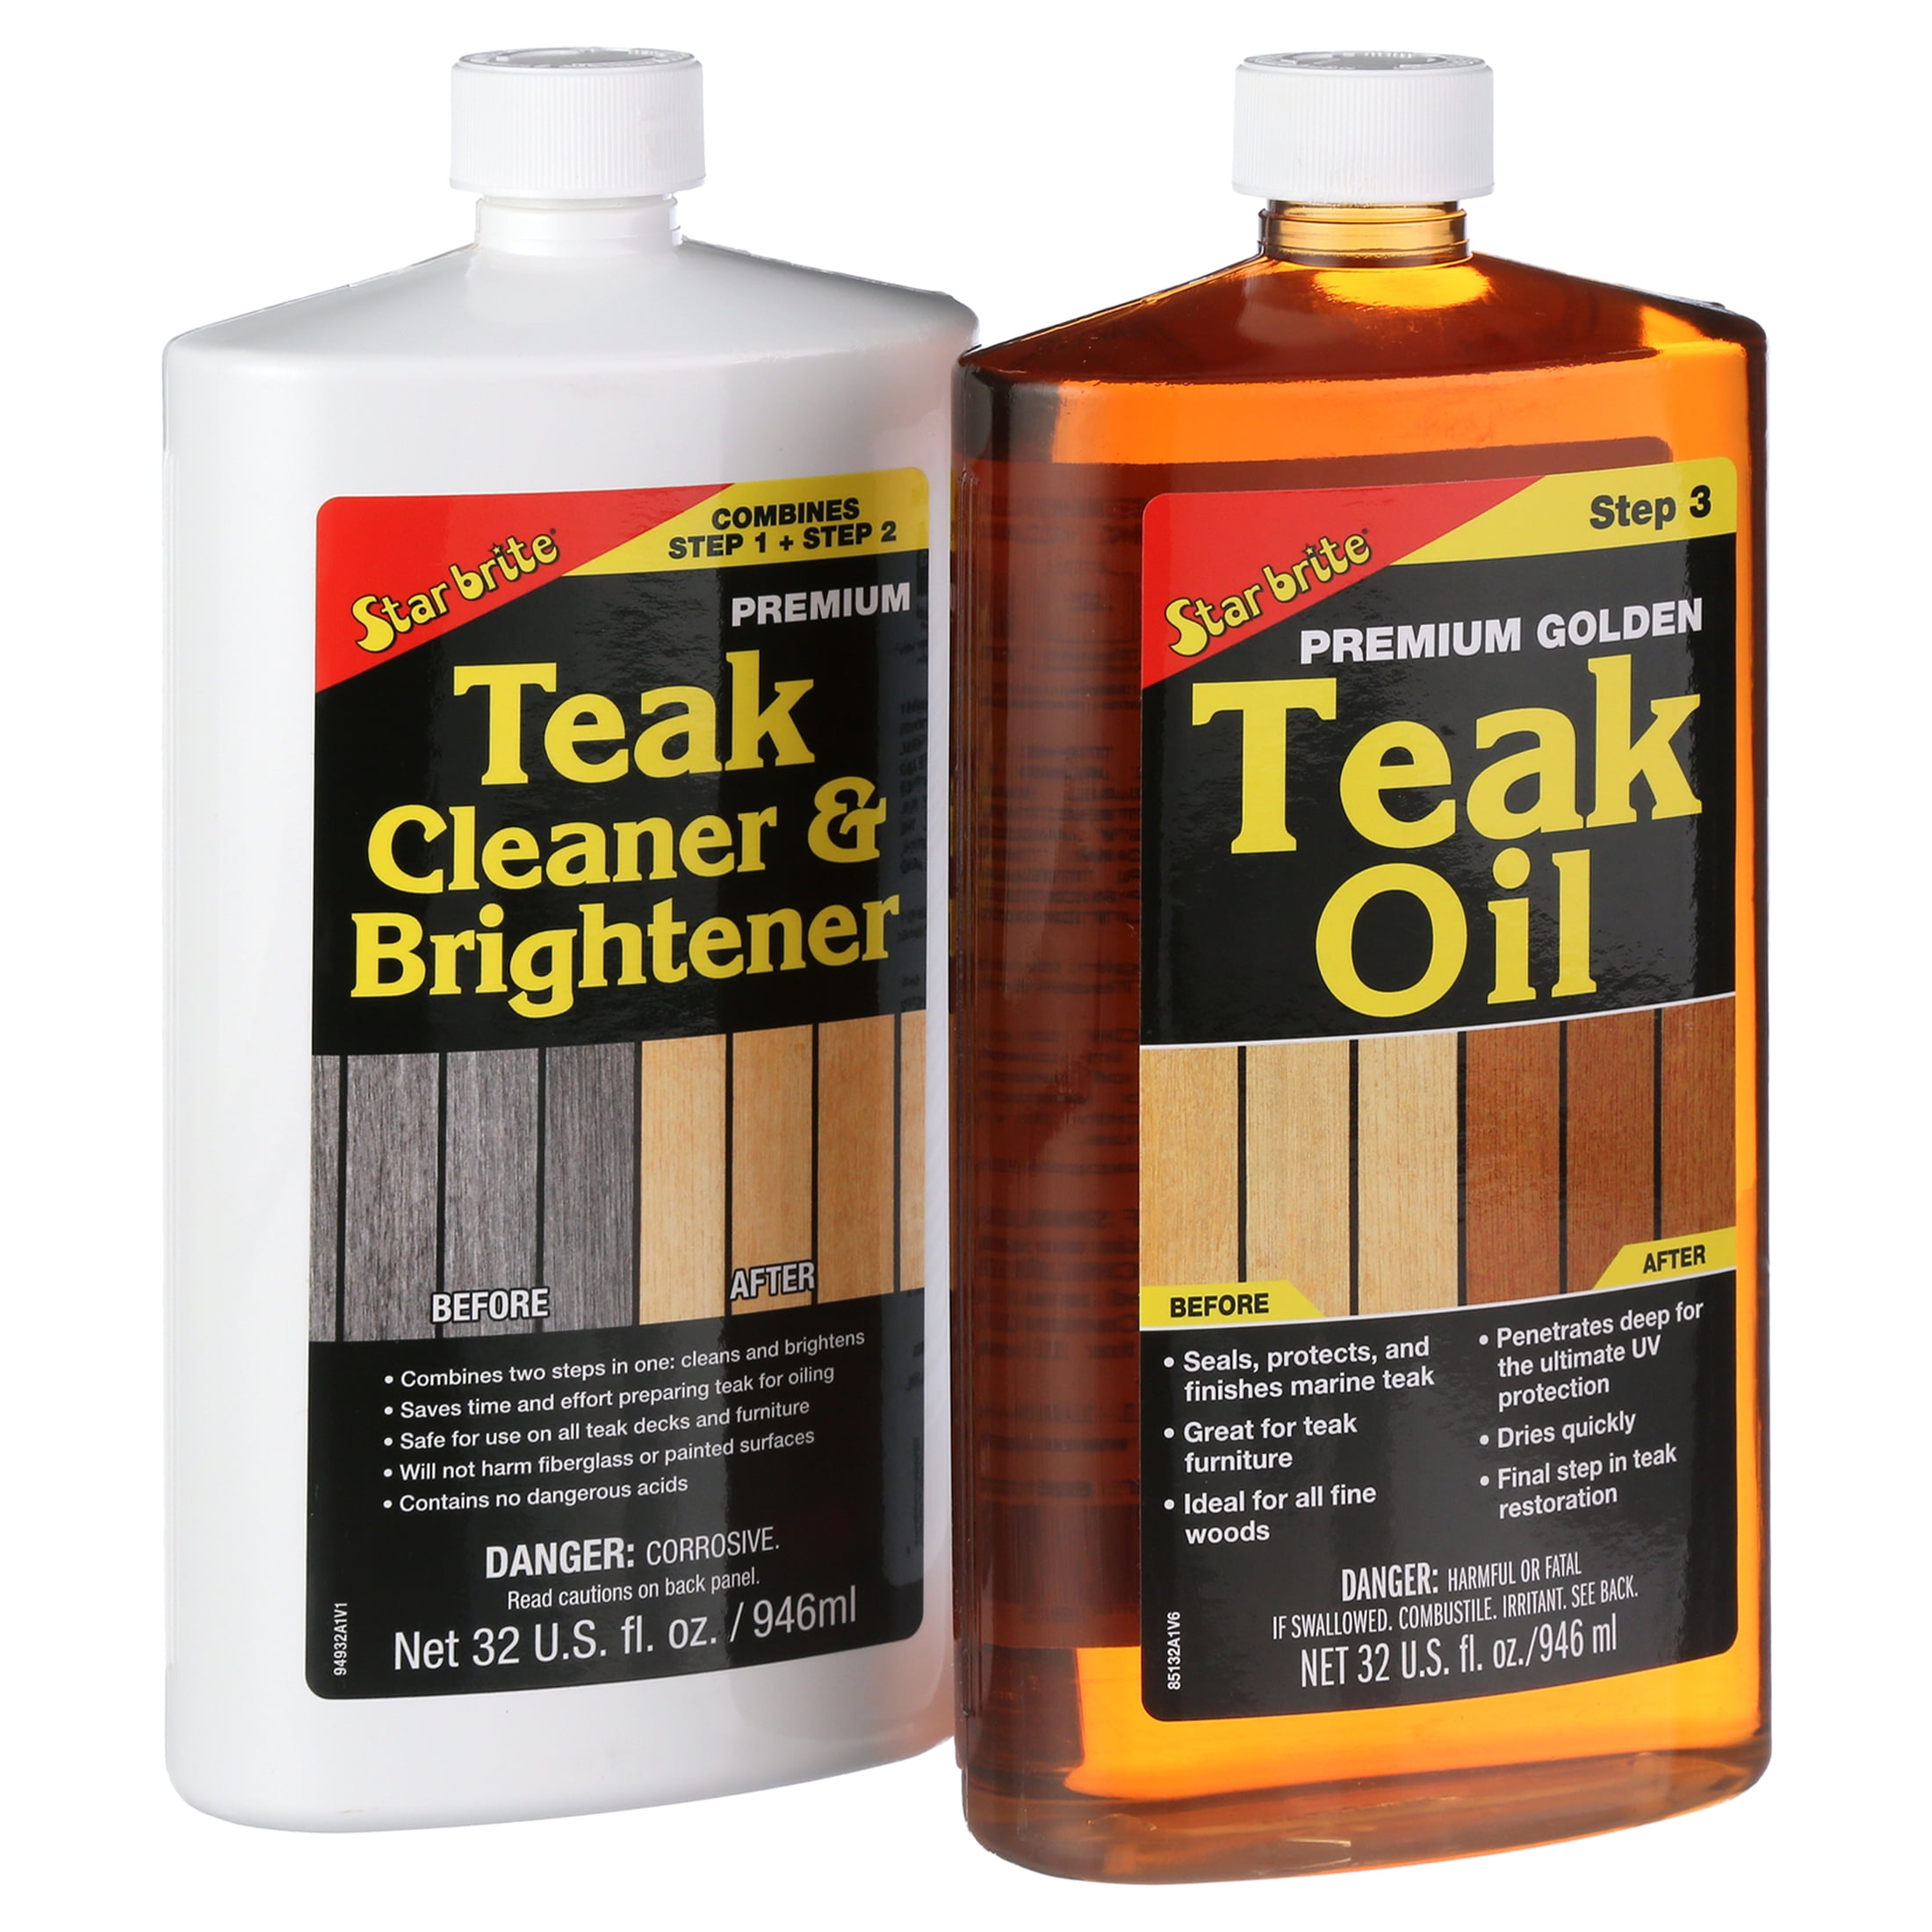 starbrite-teak-oil-before-after